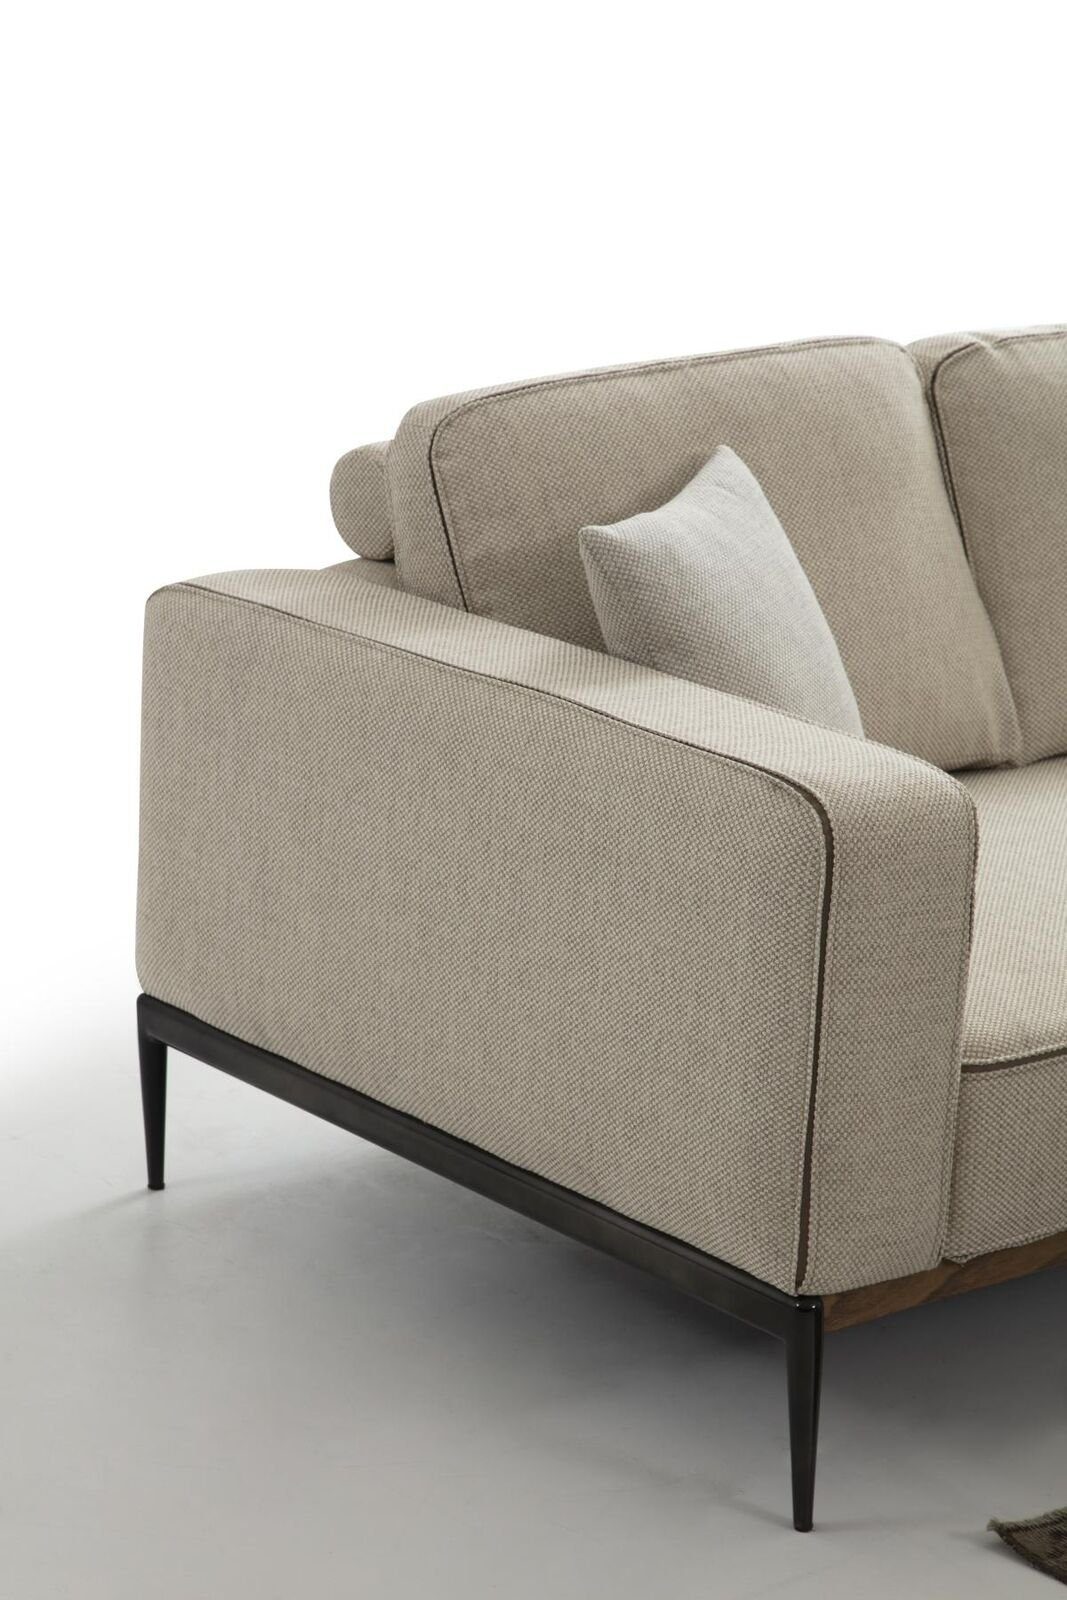 JVmoebel Design in 1 Wohnzimmer 3-Sitzer Made Sofas Europa Sitzer Sofa Stoff Beige, 3 Dreisitzer Teile, Modern